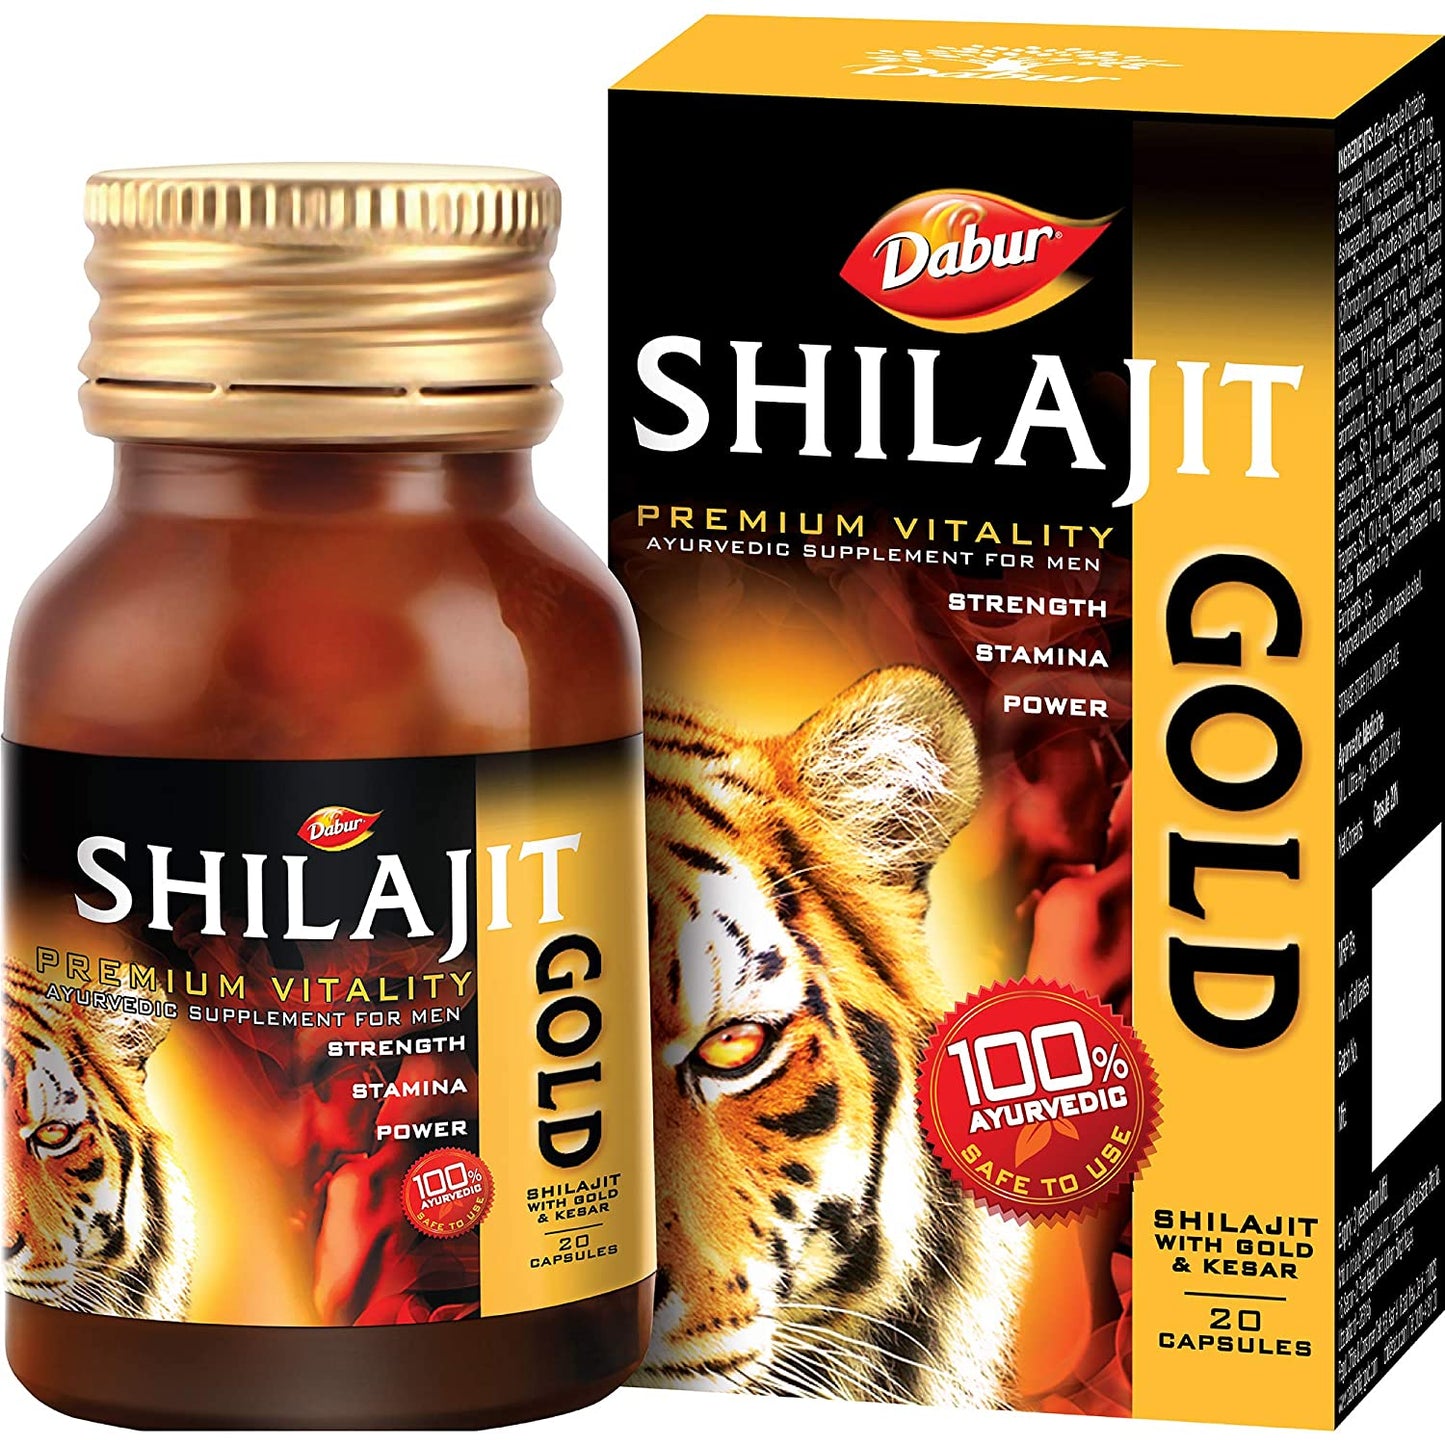 Dabur Shilajit Gold 100 % Ayurvedic Capsules for Strength & Stamina - (20 capsules)